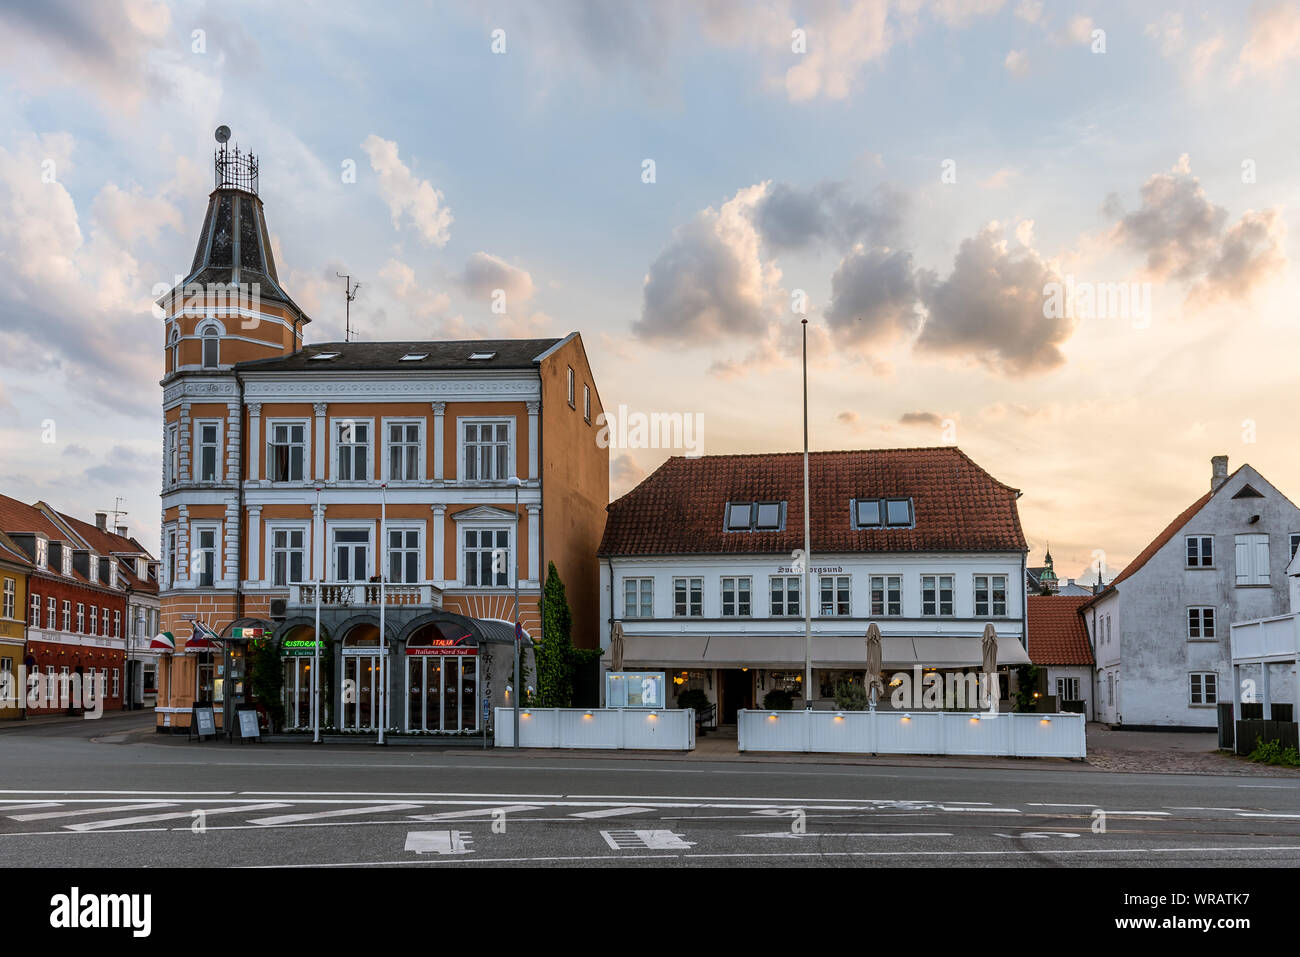 Il tramonto e le nuvole colorate su alcune case nel porto di Svenborg, Danimarca, luglio 10, 2019 Foto Stock